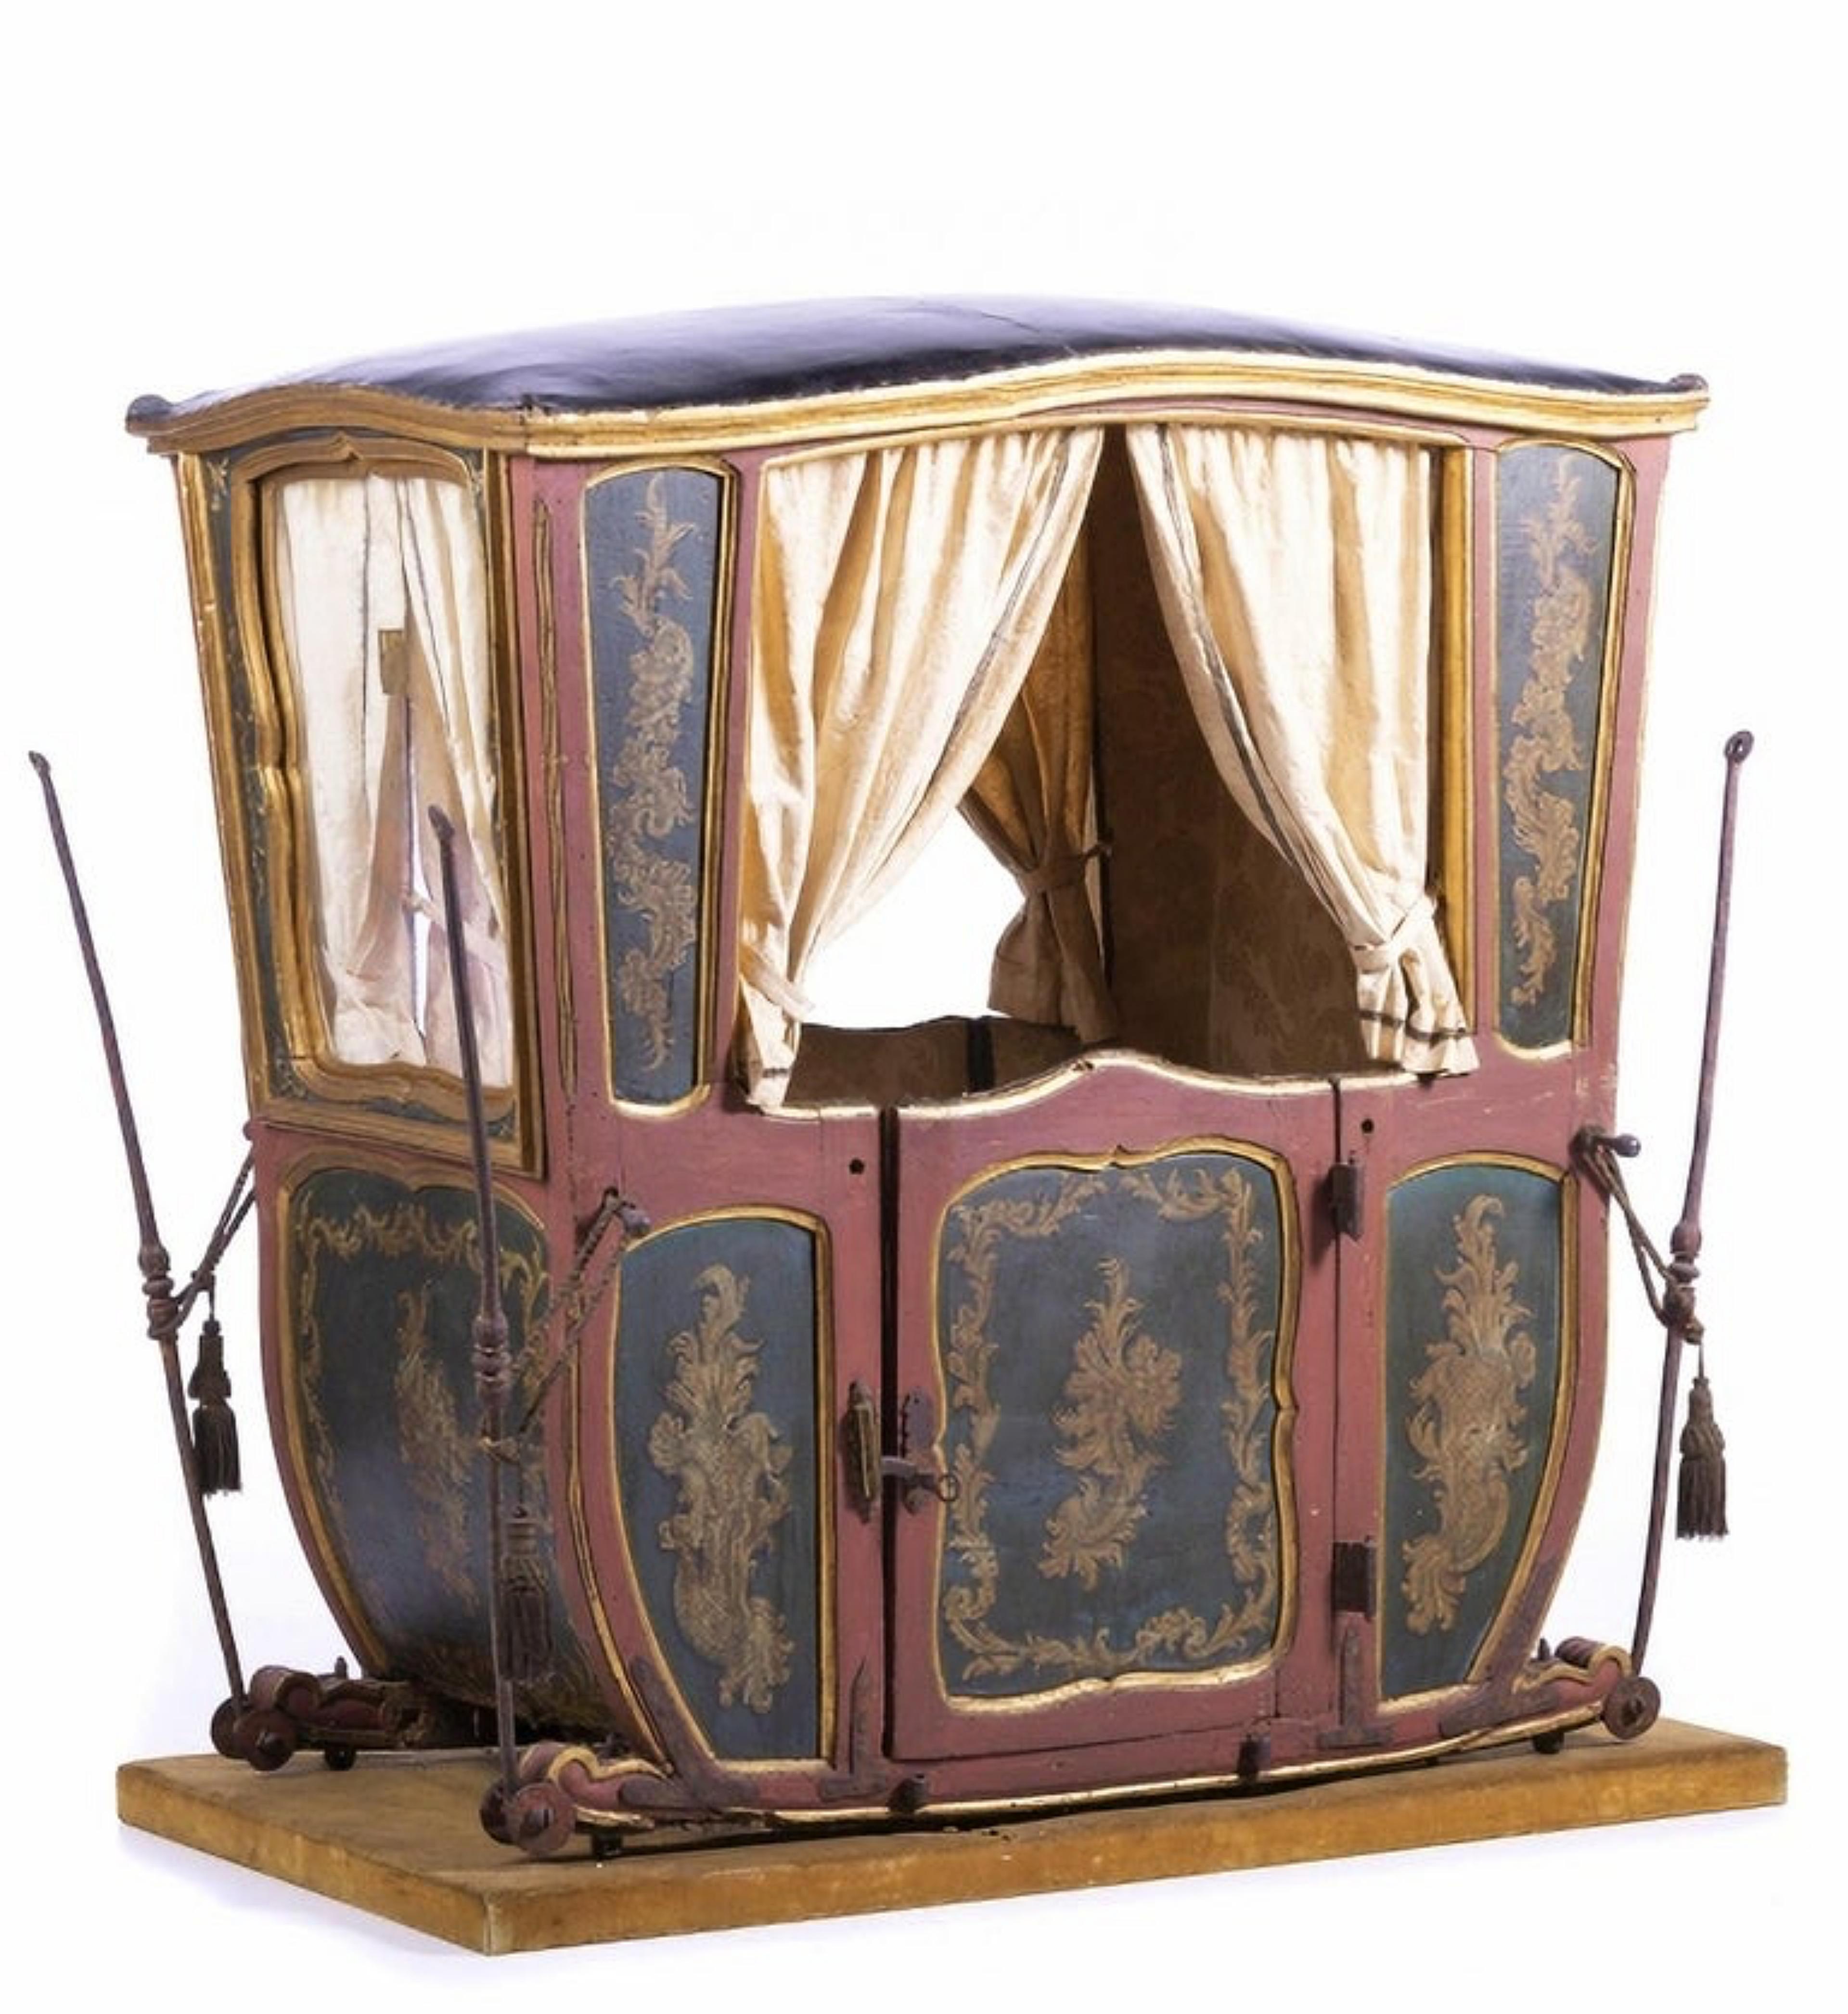 Chaise berline pour 2 personnes

Portugais du XVIIIe siècle
en bois sculpté, peint et doré, intérieur doublé de tissu, couverture en cuir.
Restaurations, échecs et défauts
Dimension : 142 x 136 x 42 cm
Bon état général.